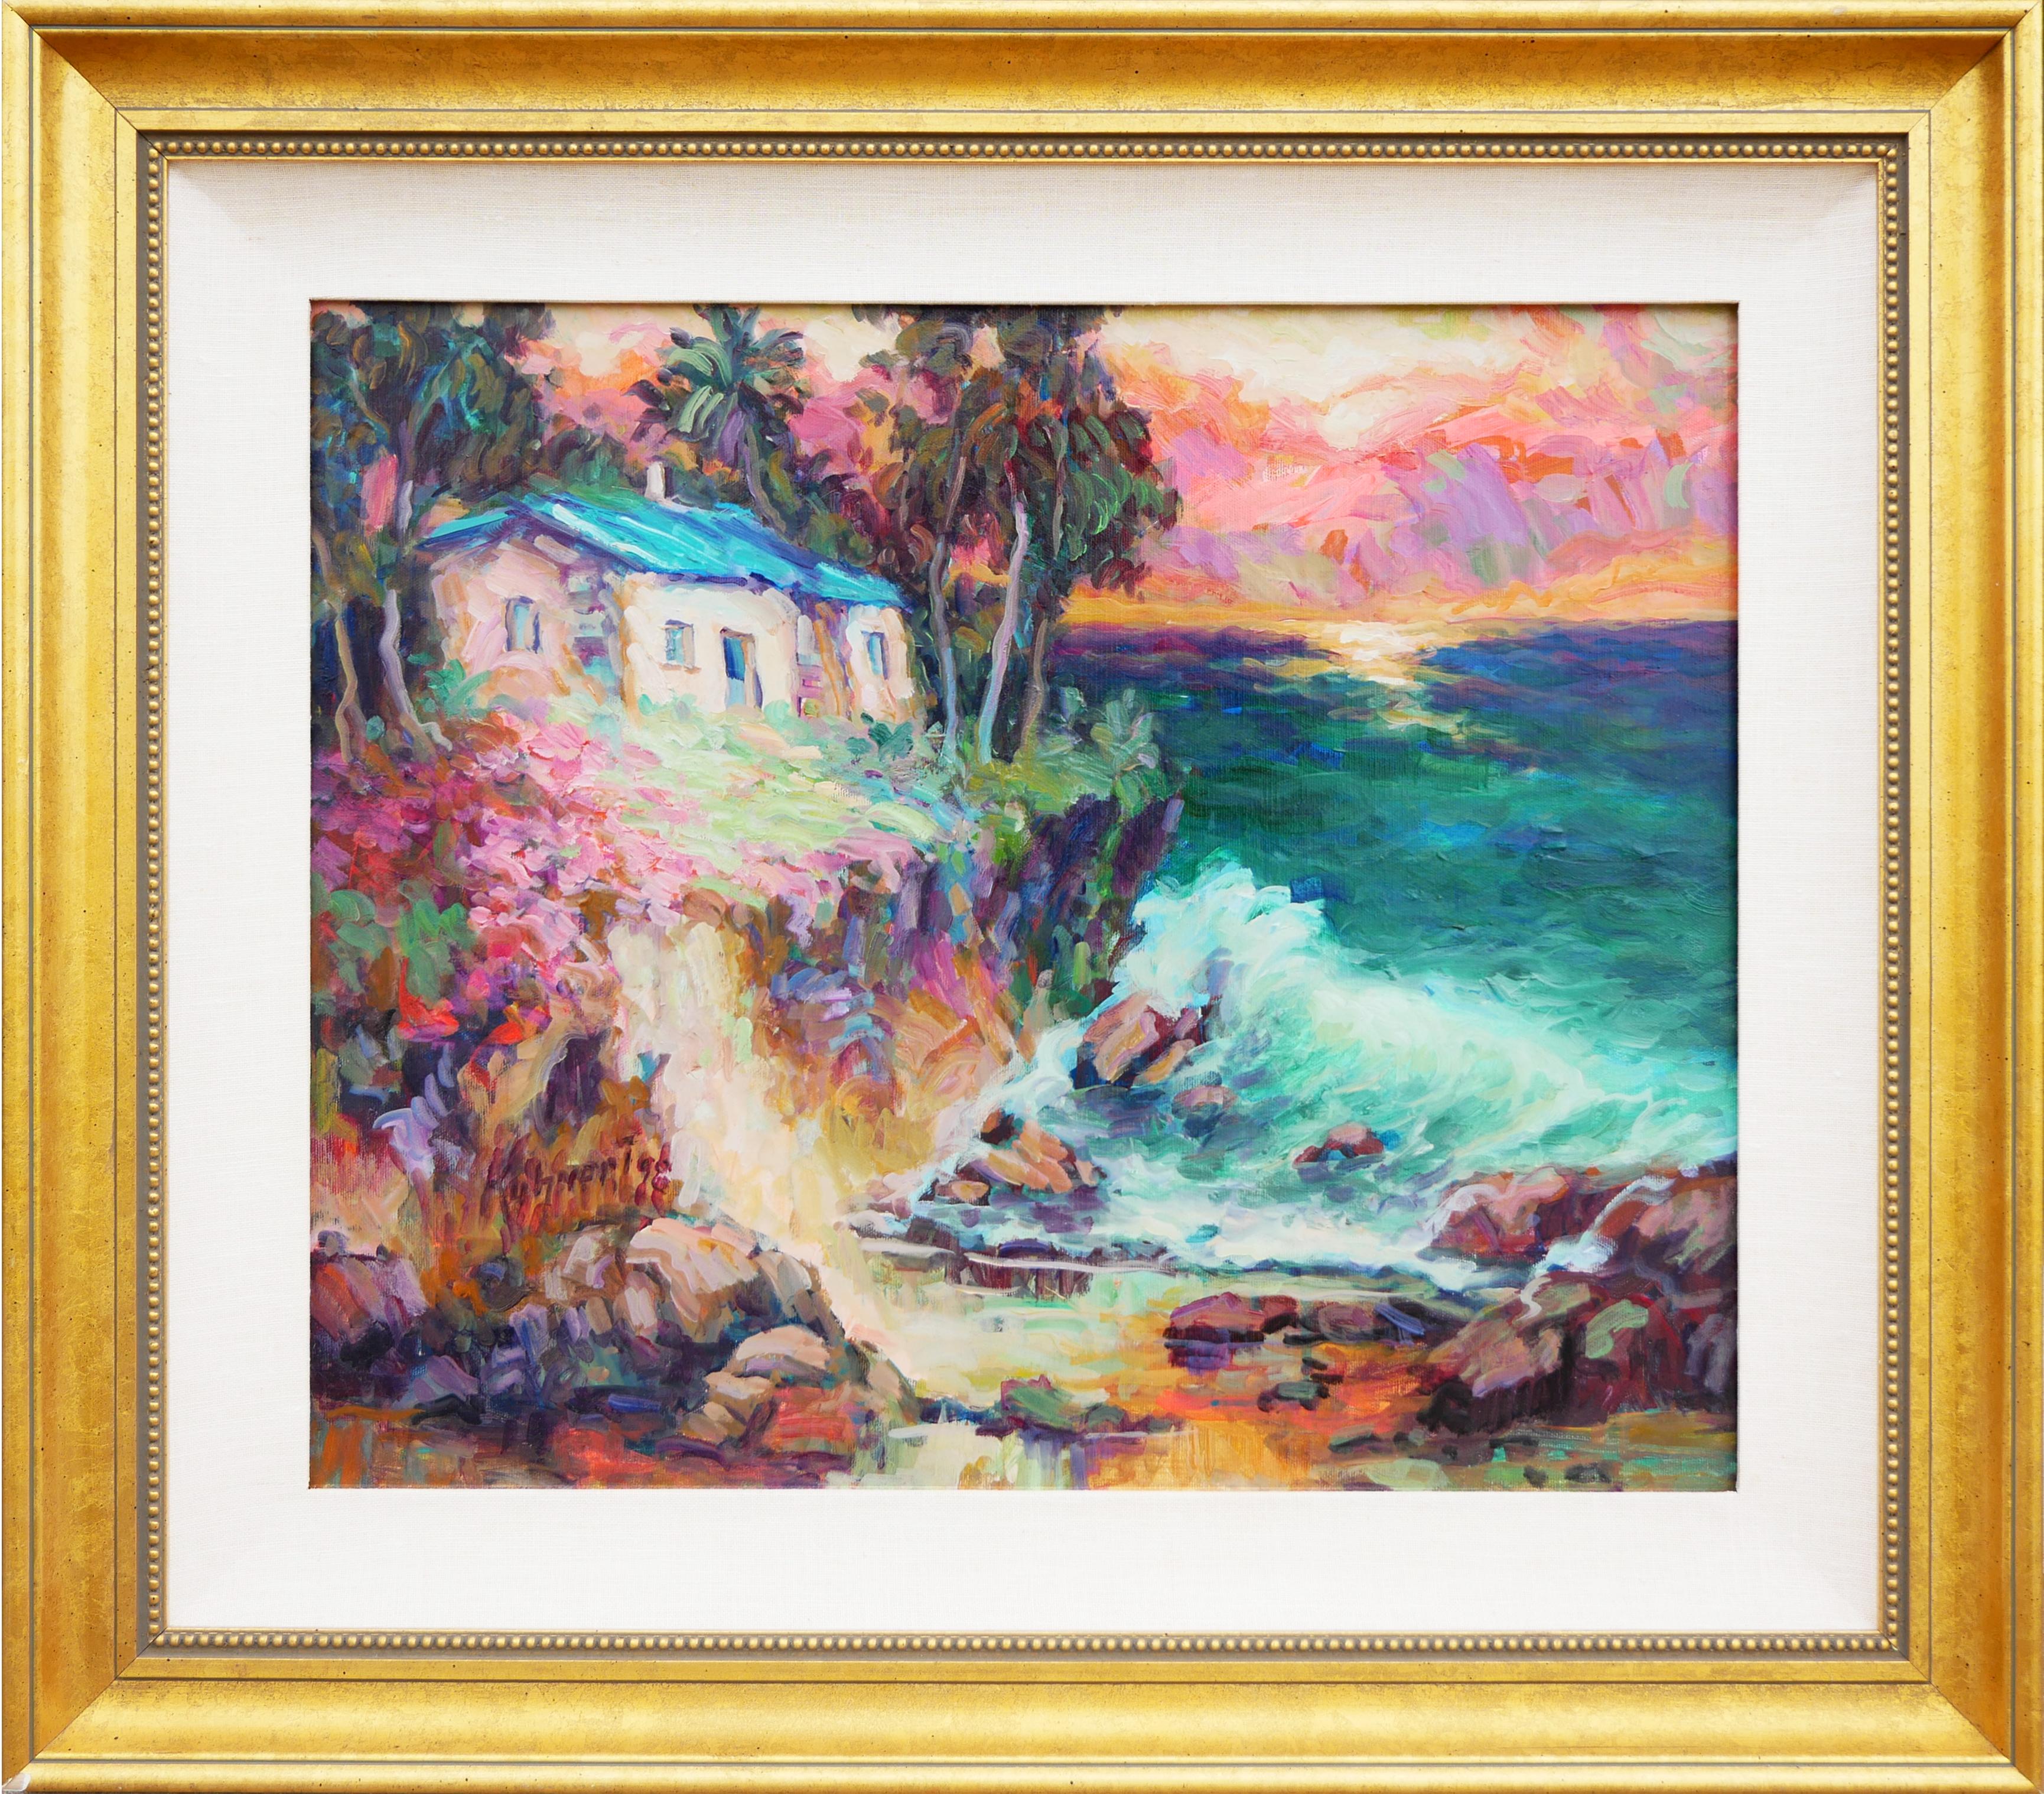 Manfred H. Kuhnert Abstract Painting – Impressionistisches Gemälde im Rosa-, Teal-, Blau- und Grünton-Stil von Laguna Beach